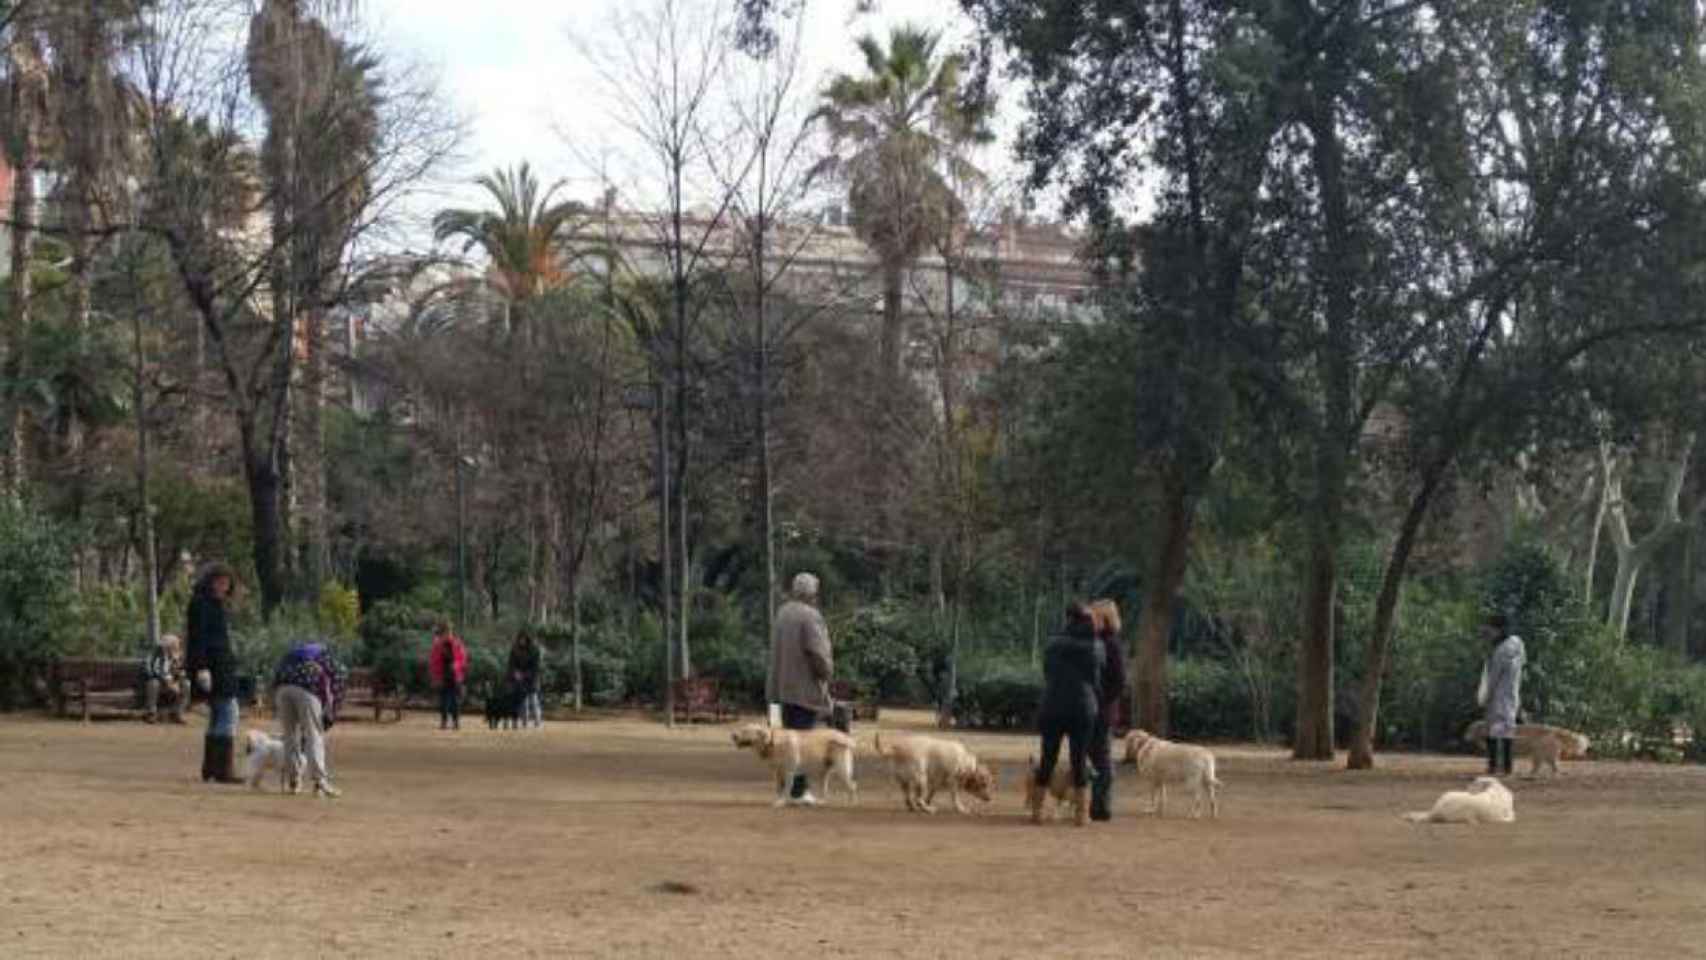 Los perros podrán seguir yendo sueltos / AVV Turó Park